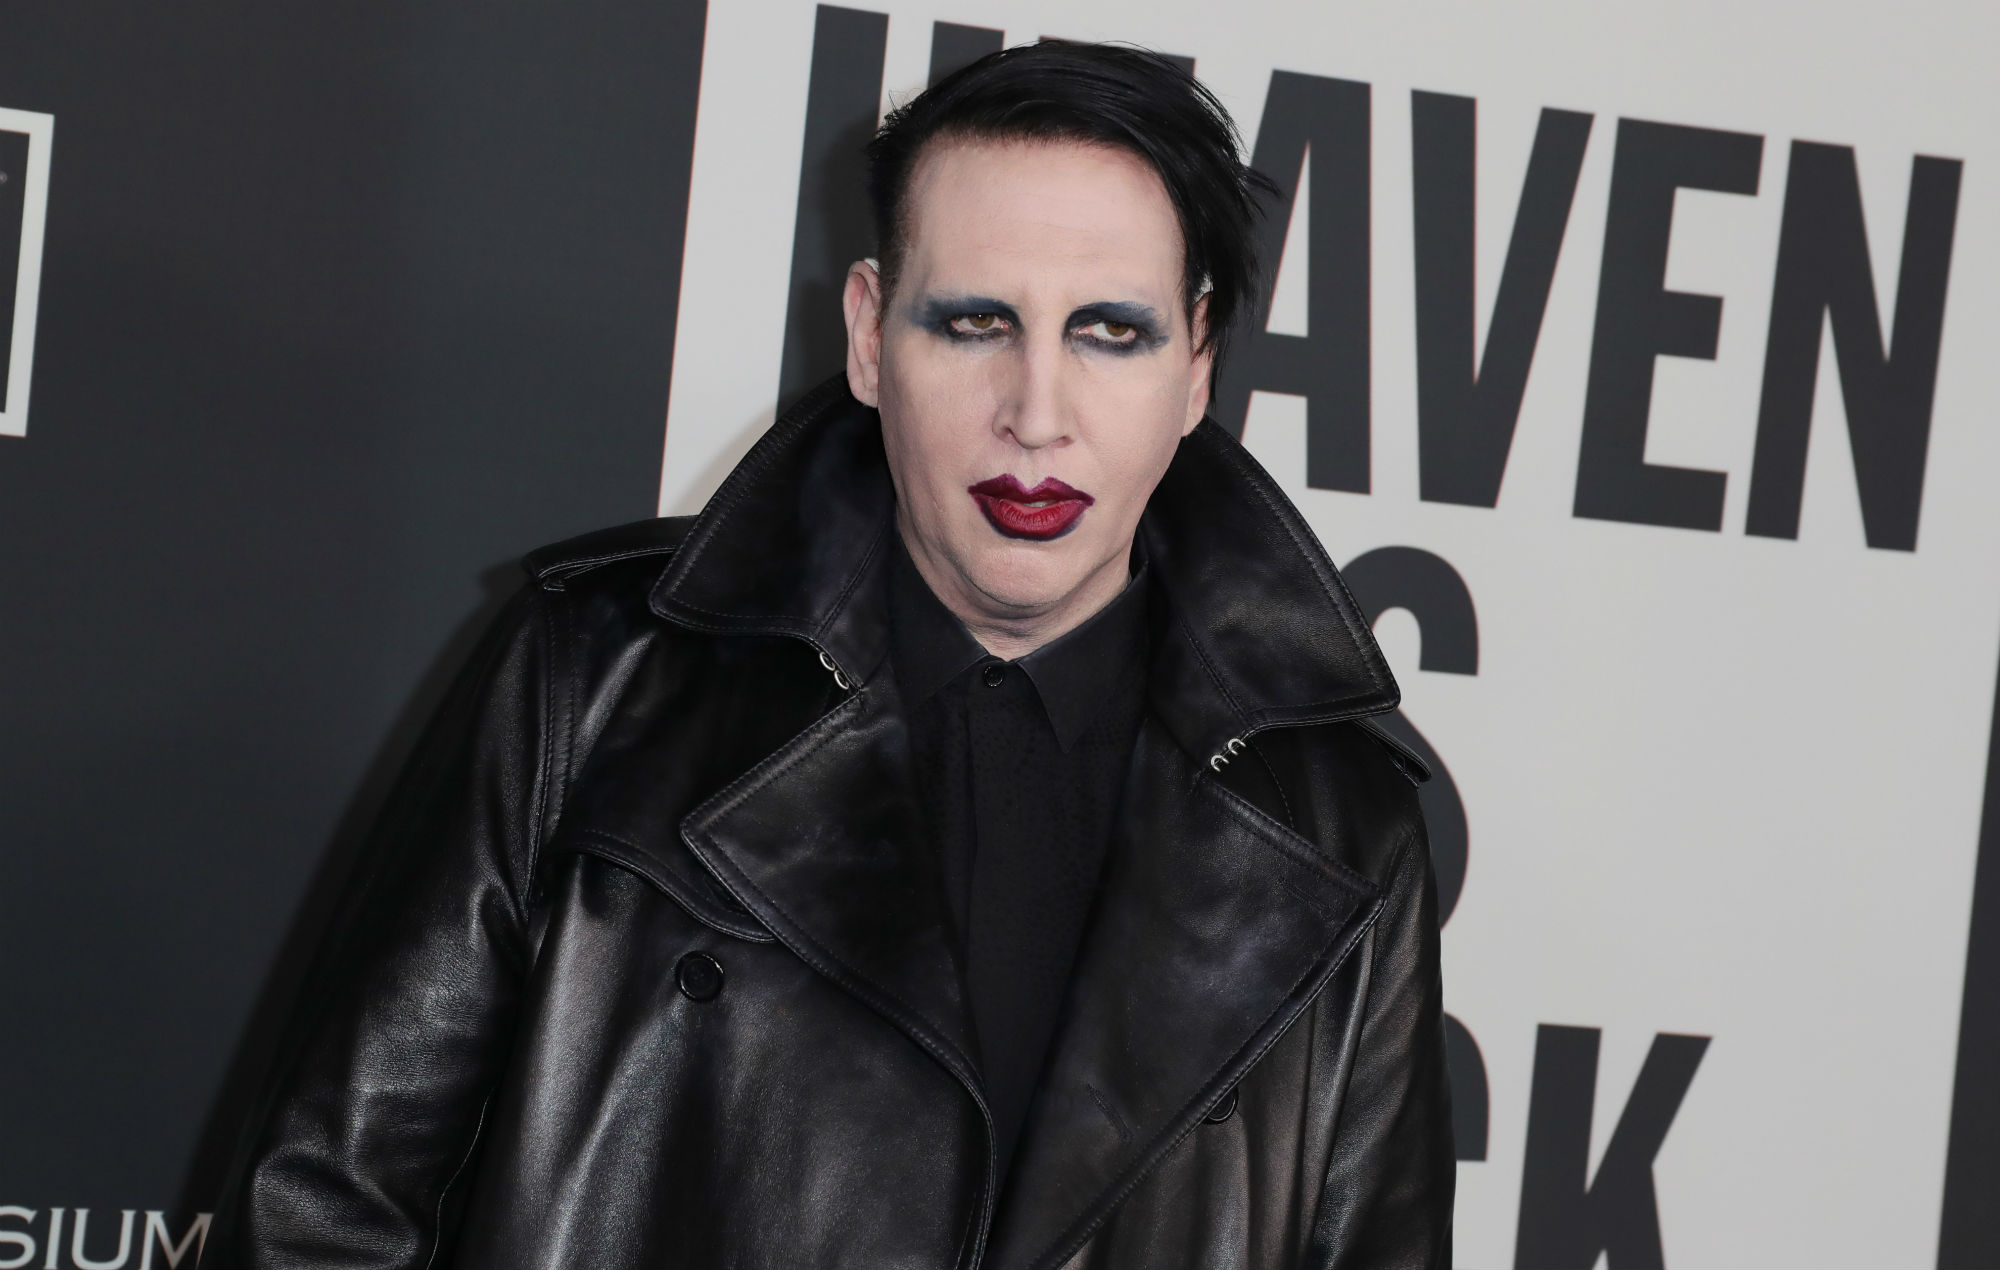 El equipo de Marilyn Manson emitió una declaración sobre la controversia de Evan Rachel Wood